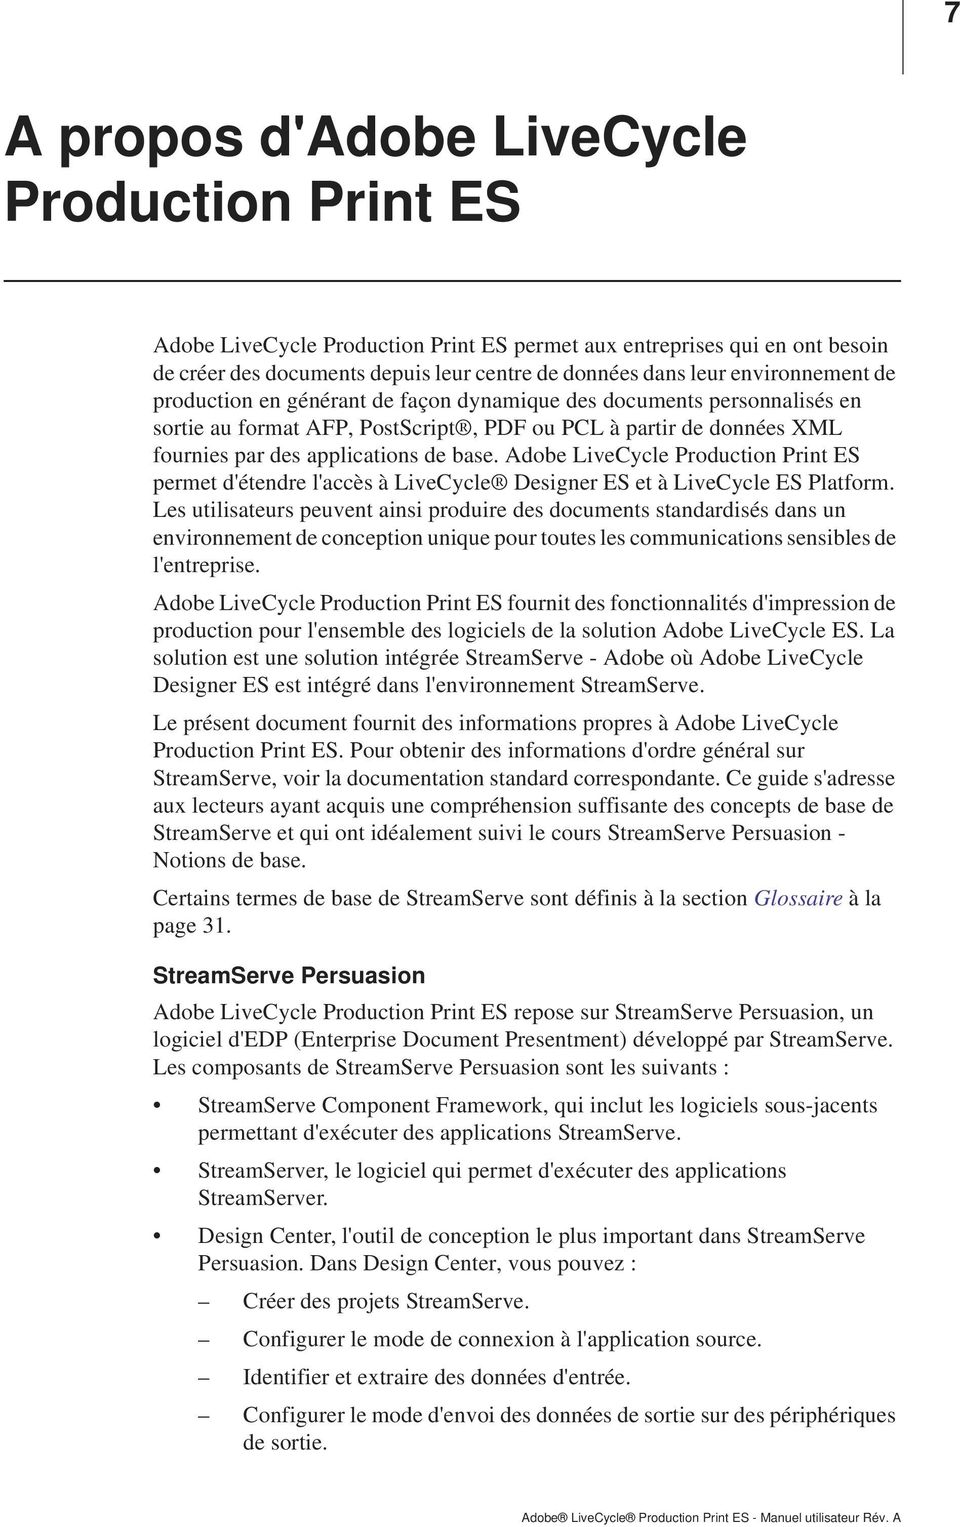 Adobe LiveCycle Production Print ES permet d'étendre l'accès à LiveCycle Designer ES et à LiveCycle ES Platform.